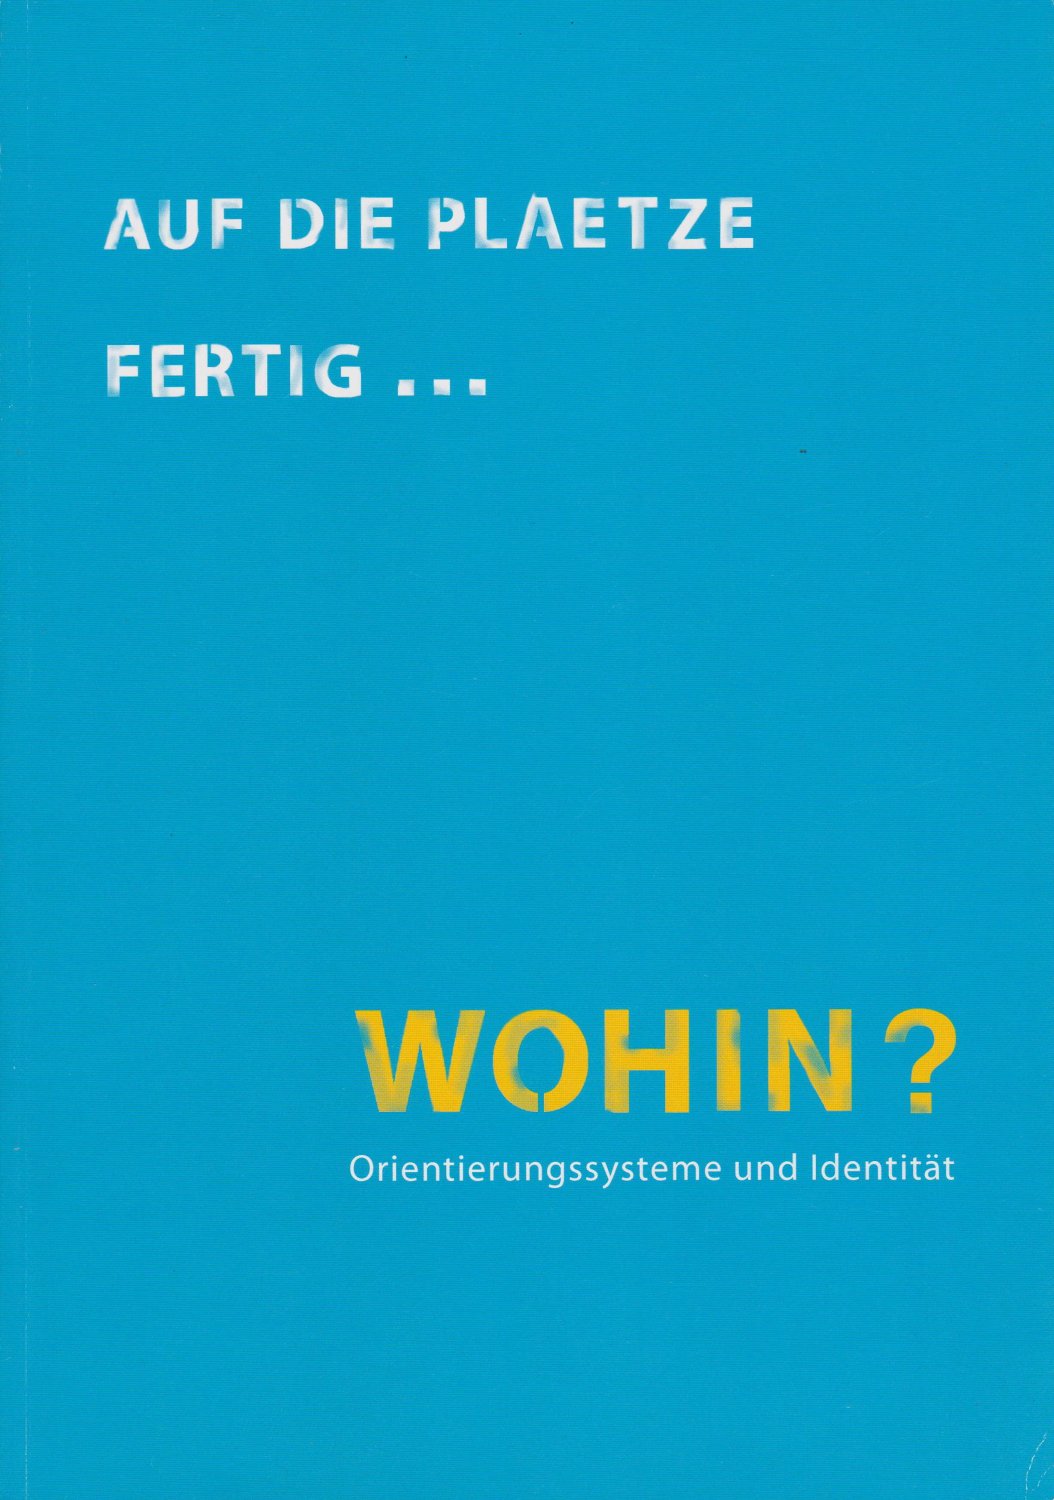 HINZ, Katrin (Herausgeberin):  Auf die Plaetze fertig ... Wohin? Orientierungssysteme und Identität. 